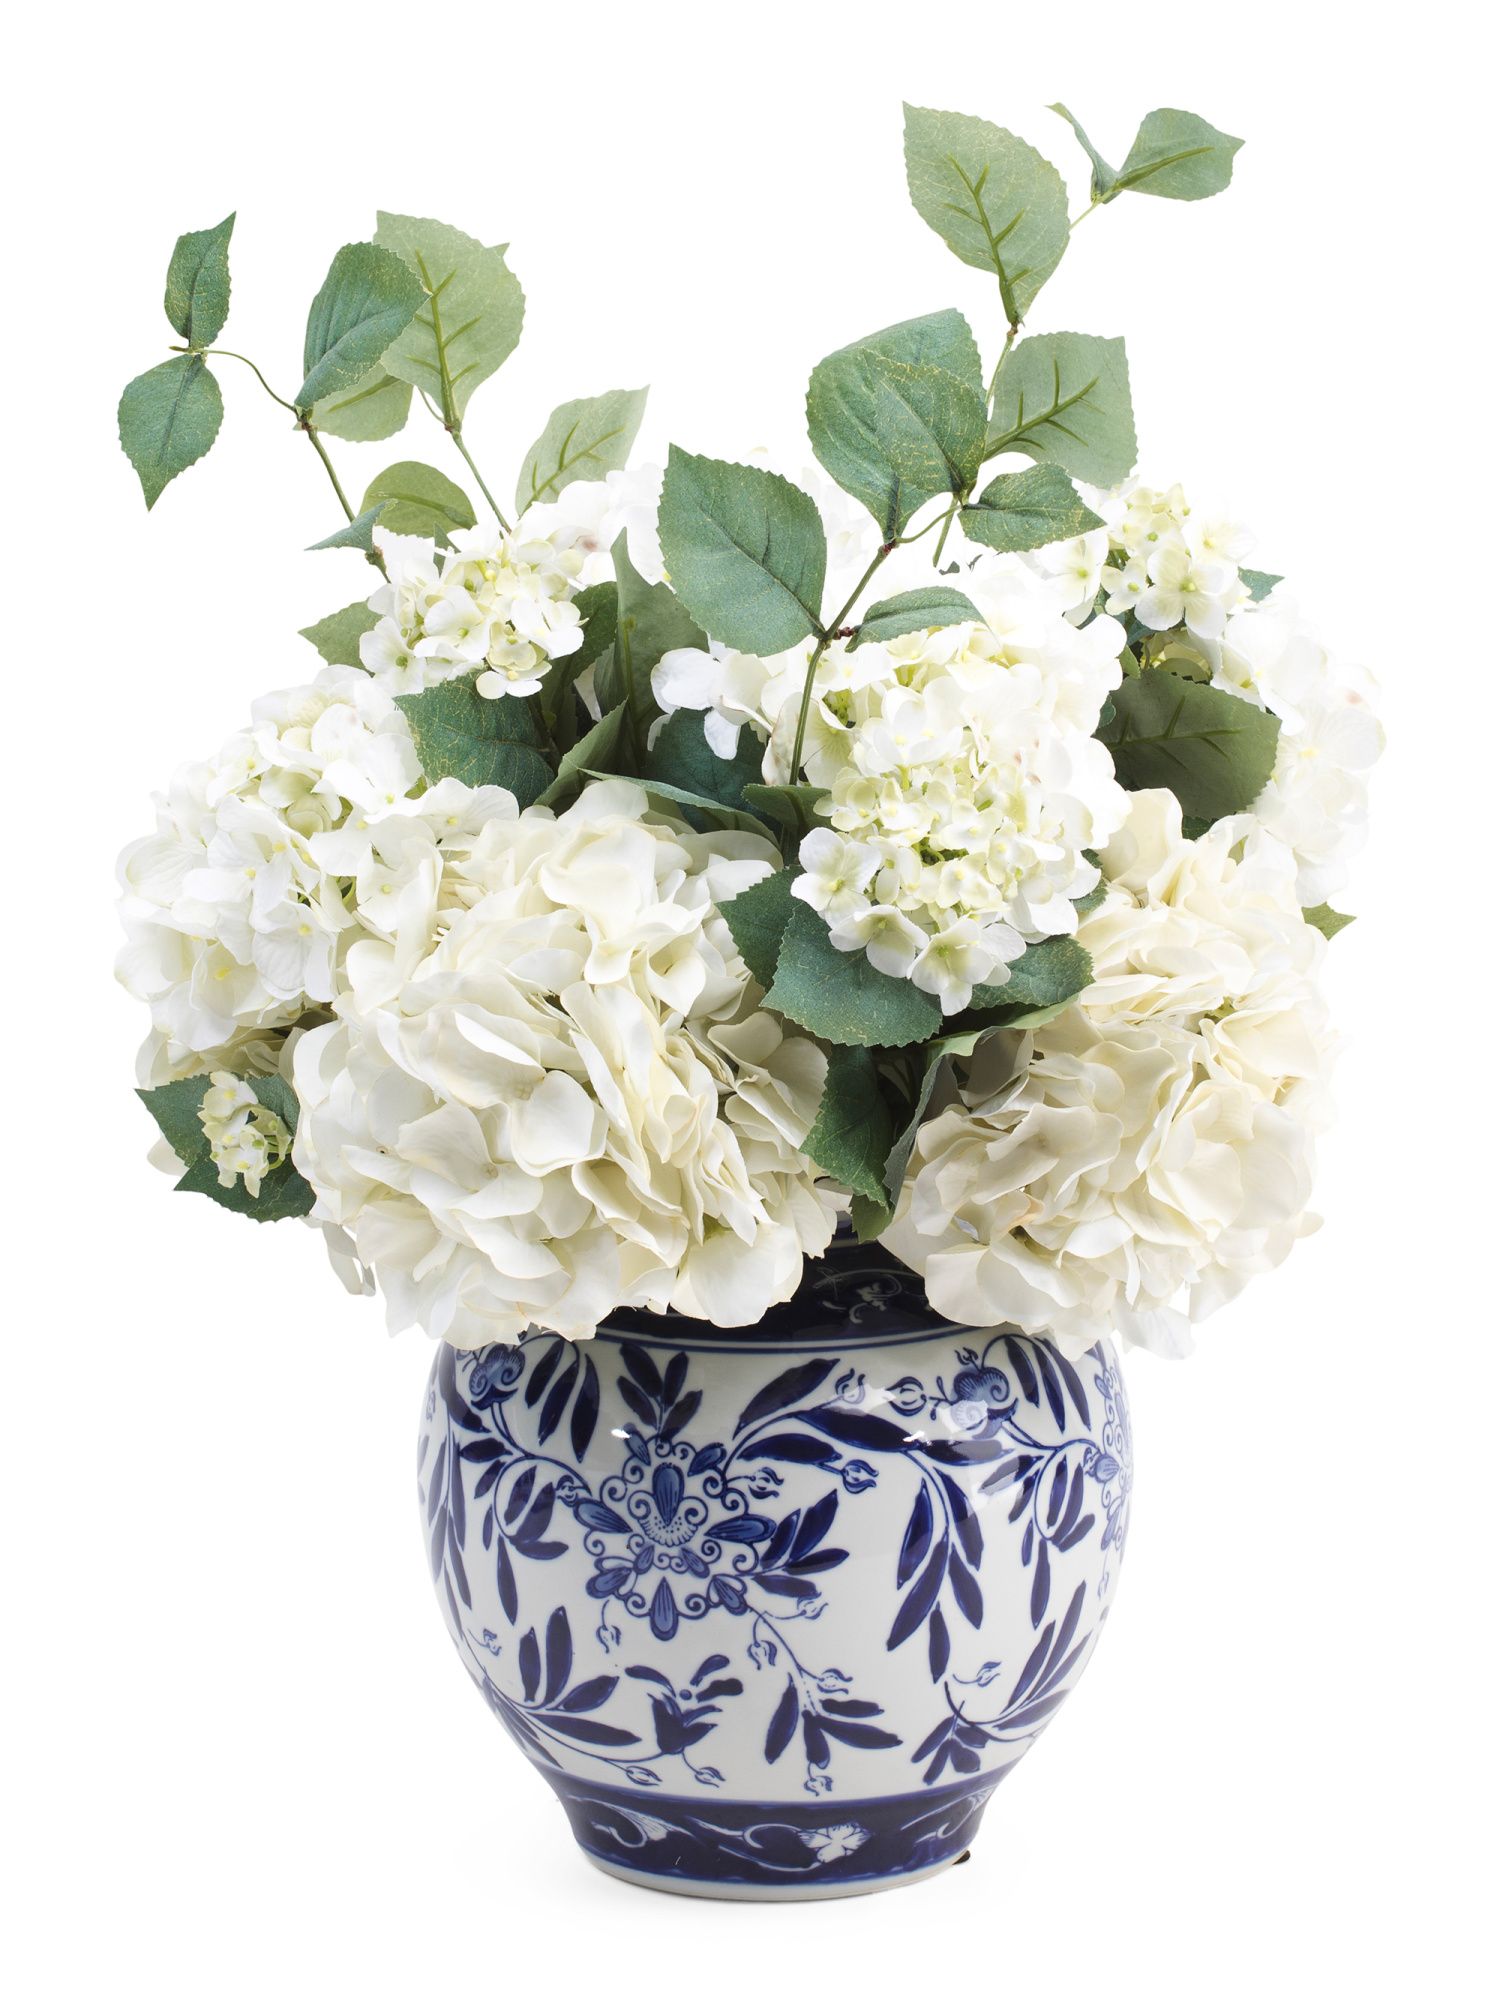 Hydrangea Arrangement In Ceramic Vase | TJ Maxx